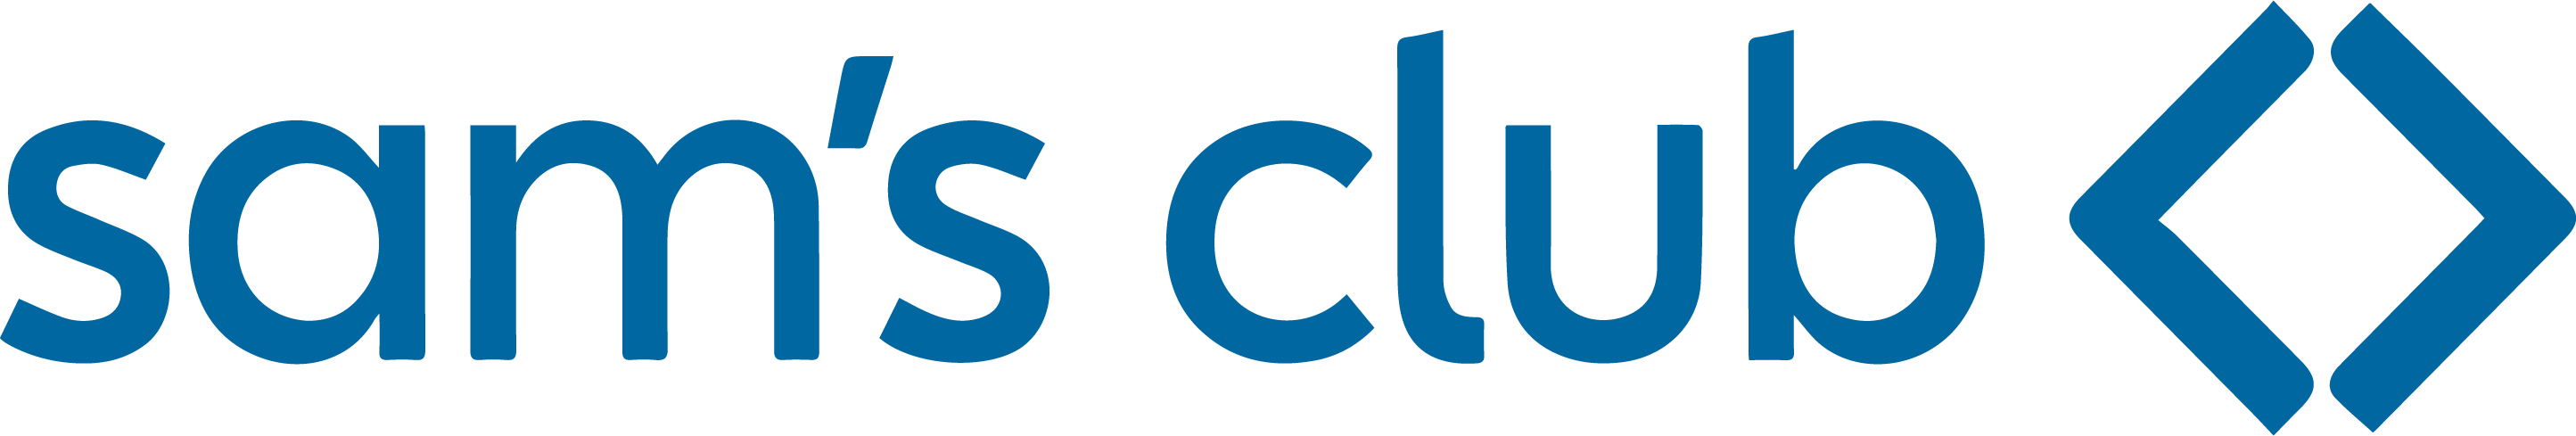 smas-club-logo